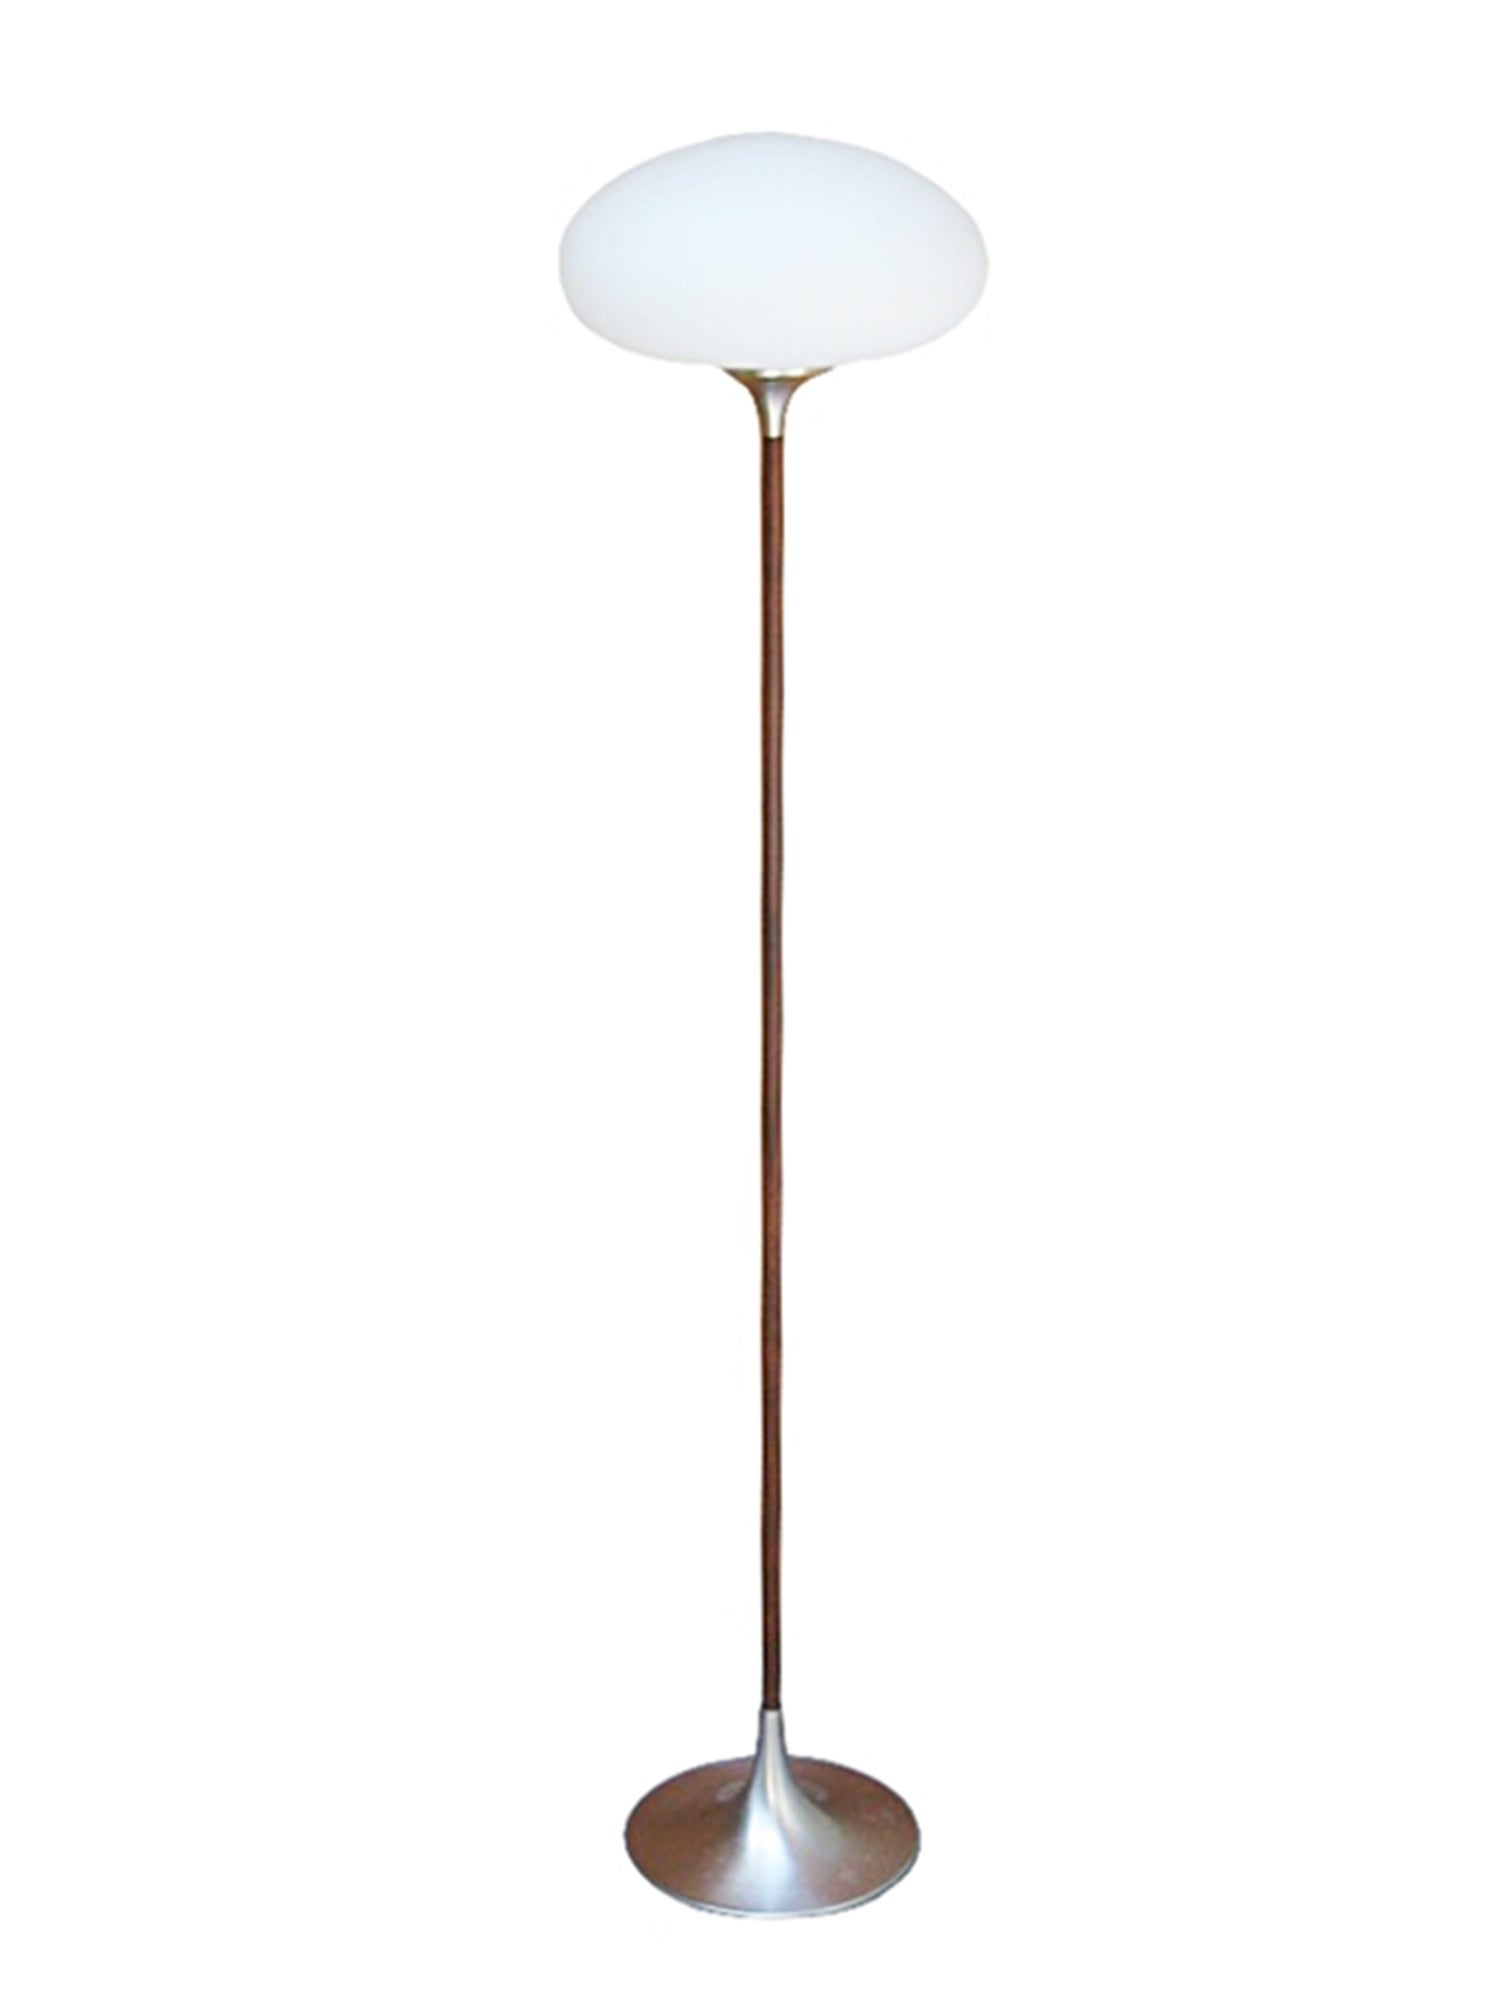 Mushroom Style Floor Lamp with Rosewood Stem by Laurel Lighting